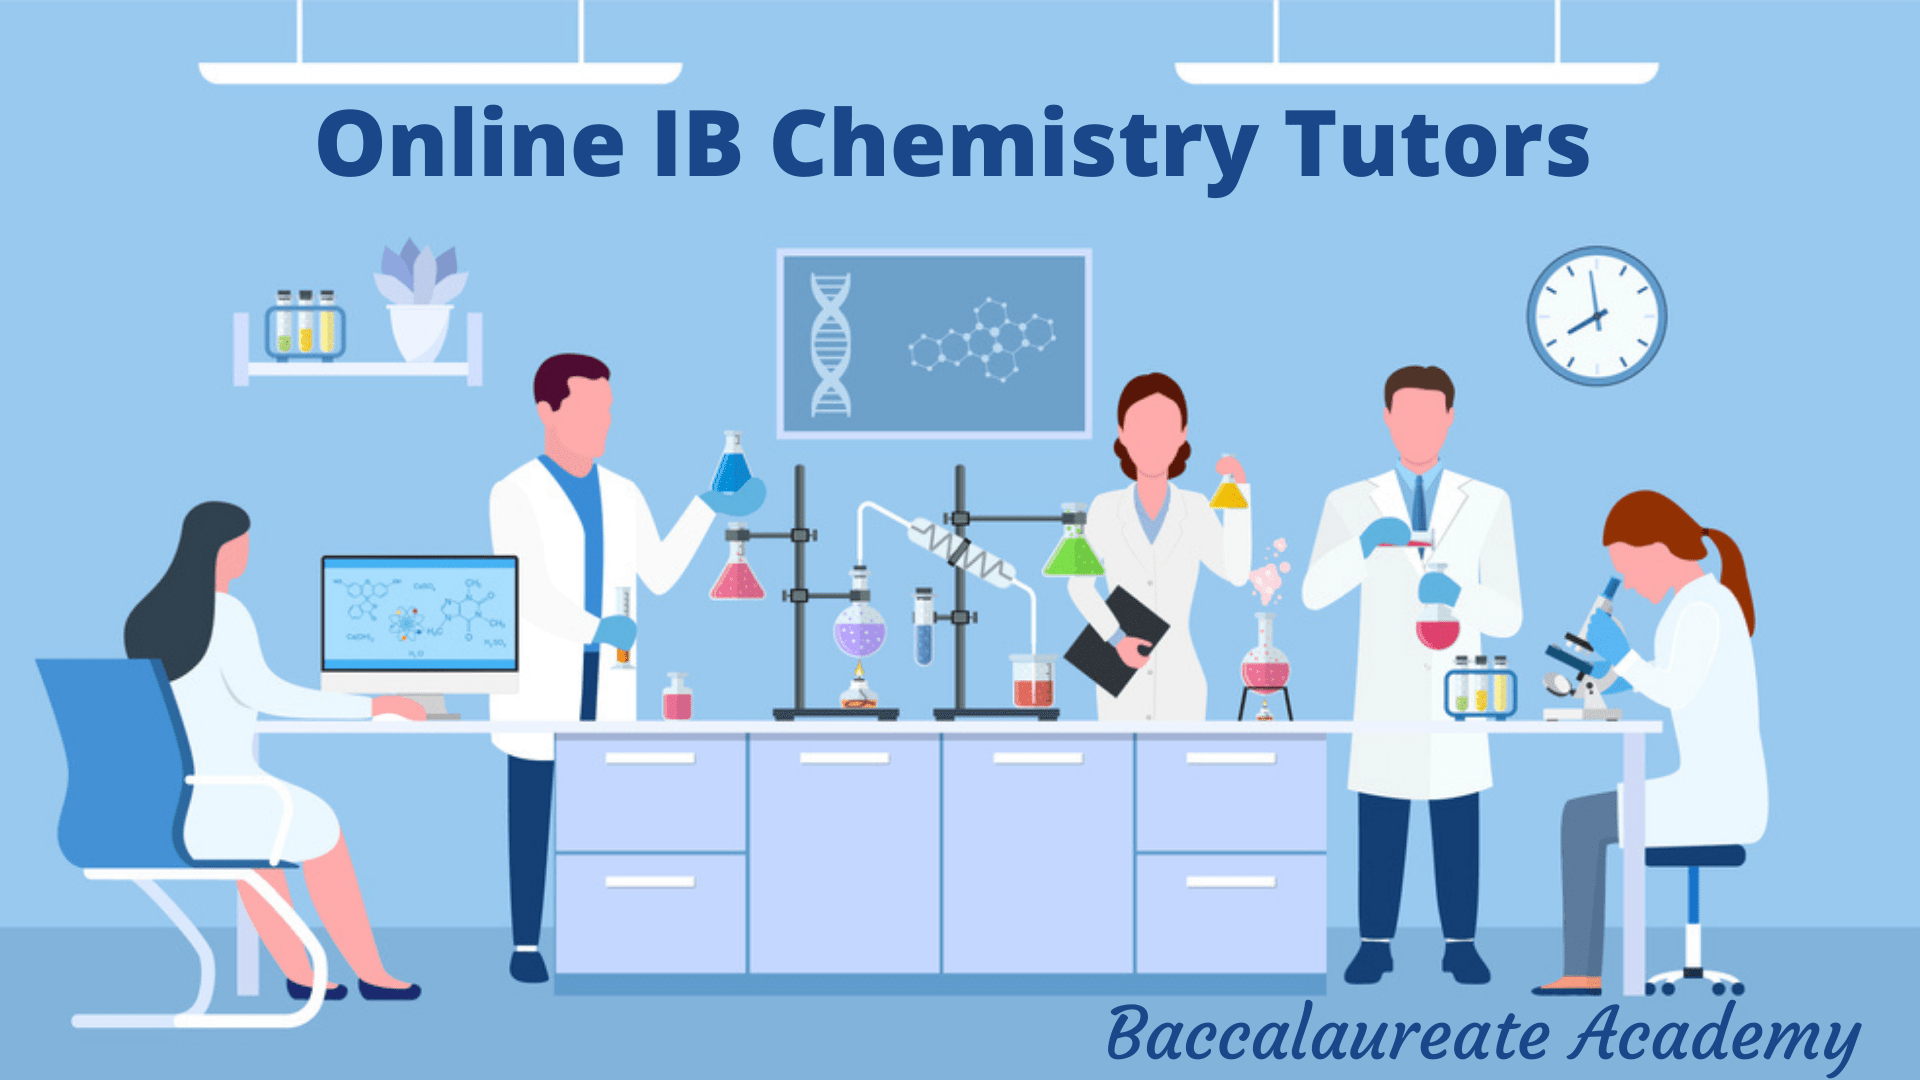 Online IB Chemistry Tutors | IB Chemistry Tutors - Baccalaureate Academy